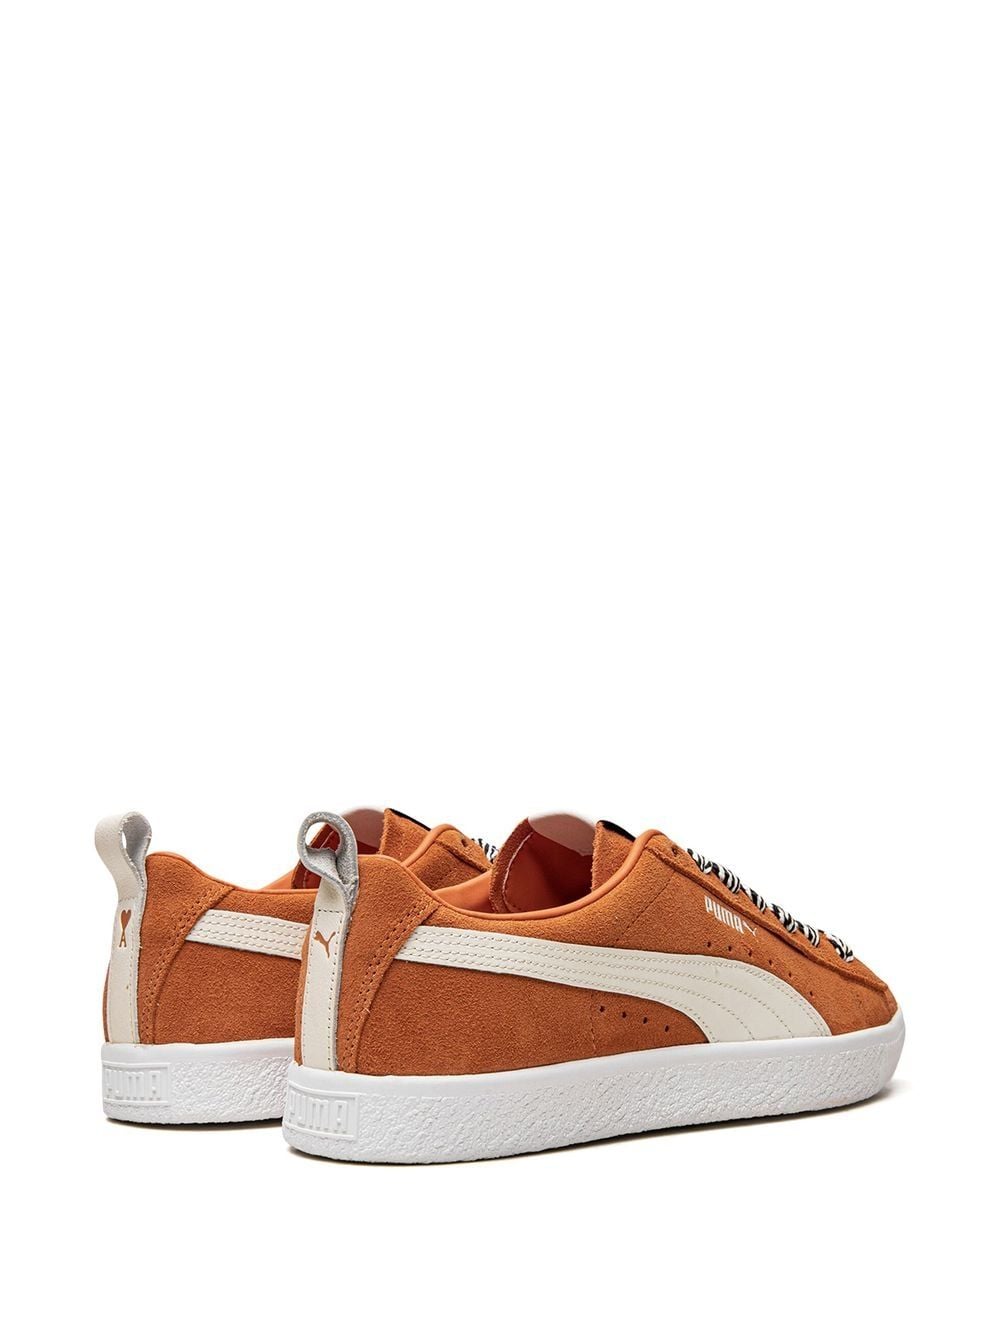 Shop Puma X Ami Suede Vintage “jaffa Orange” Sneakers